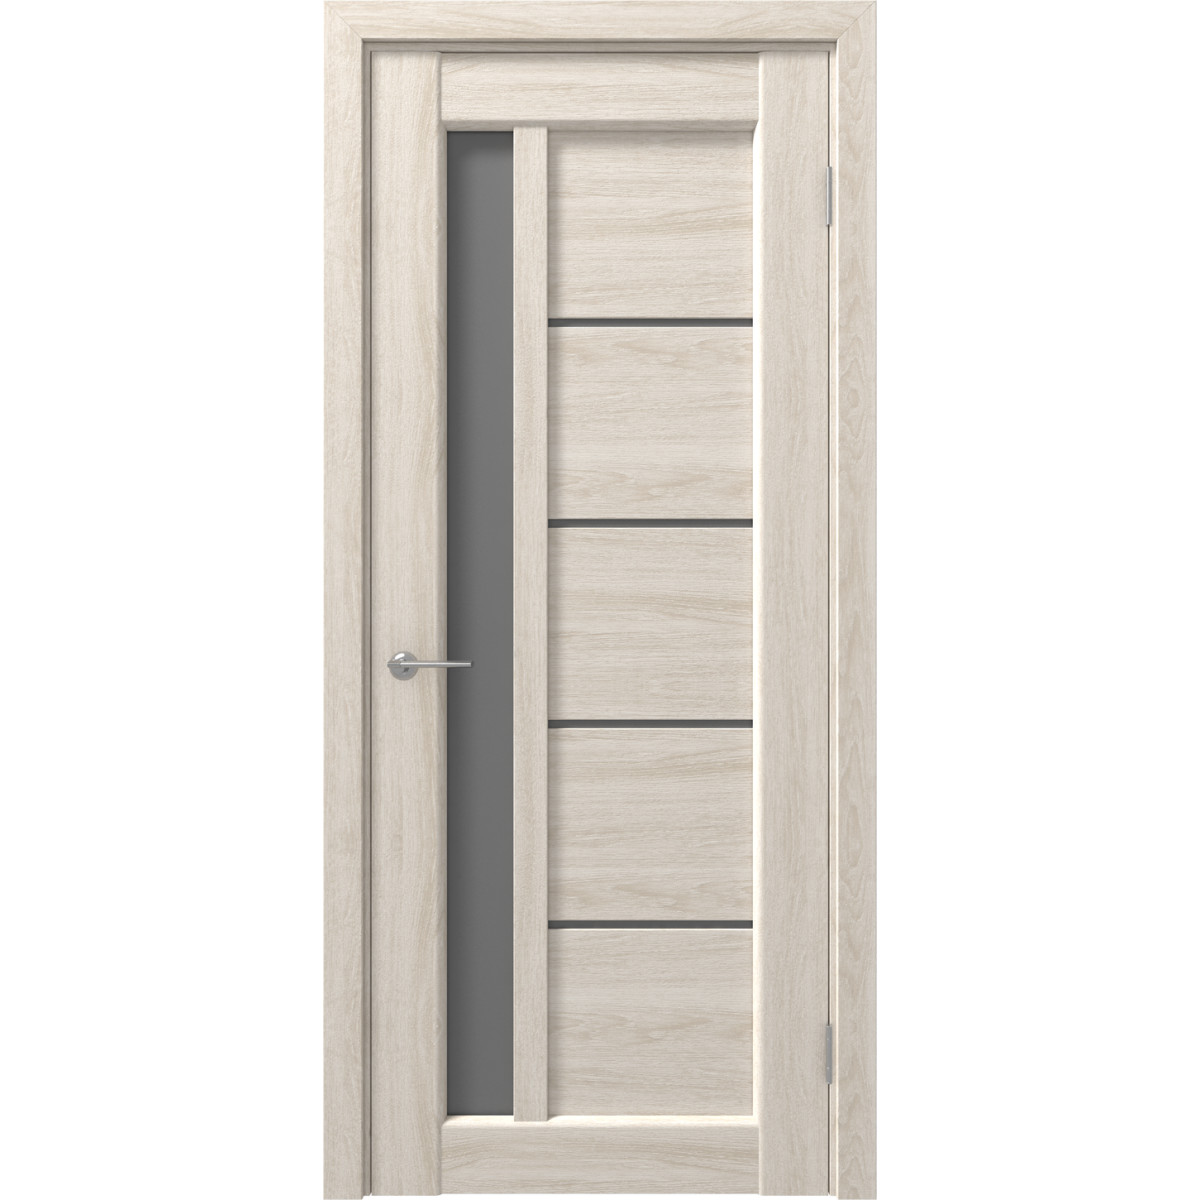 Дверь межкомнатная остеклённая с замком и петлями в комплекте Artens Брио 90x200 см ПВХ цвет дуб филадельфия